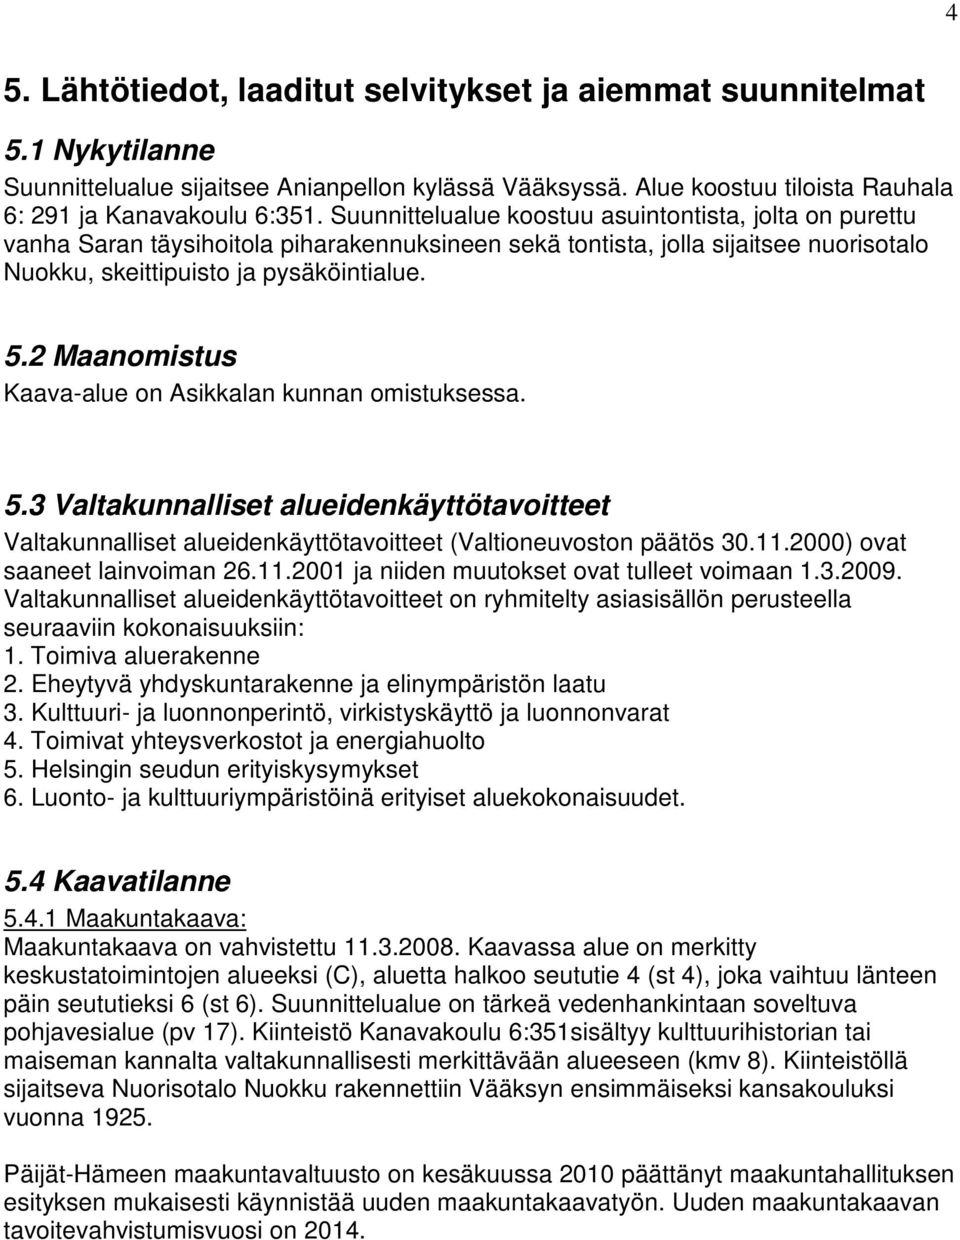 2 Maanomistus Kaava-alue on Asikkalan kunnan omistuksessa. 5.3 Valtakunnalliset alueidenkäyttötavoitteet Valtakunnalliset alueidenkäyttötavoitteet (Valtioneuvoston päätös 30.11.